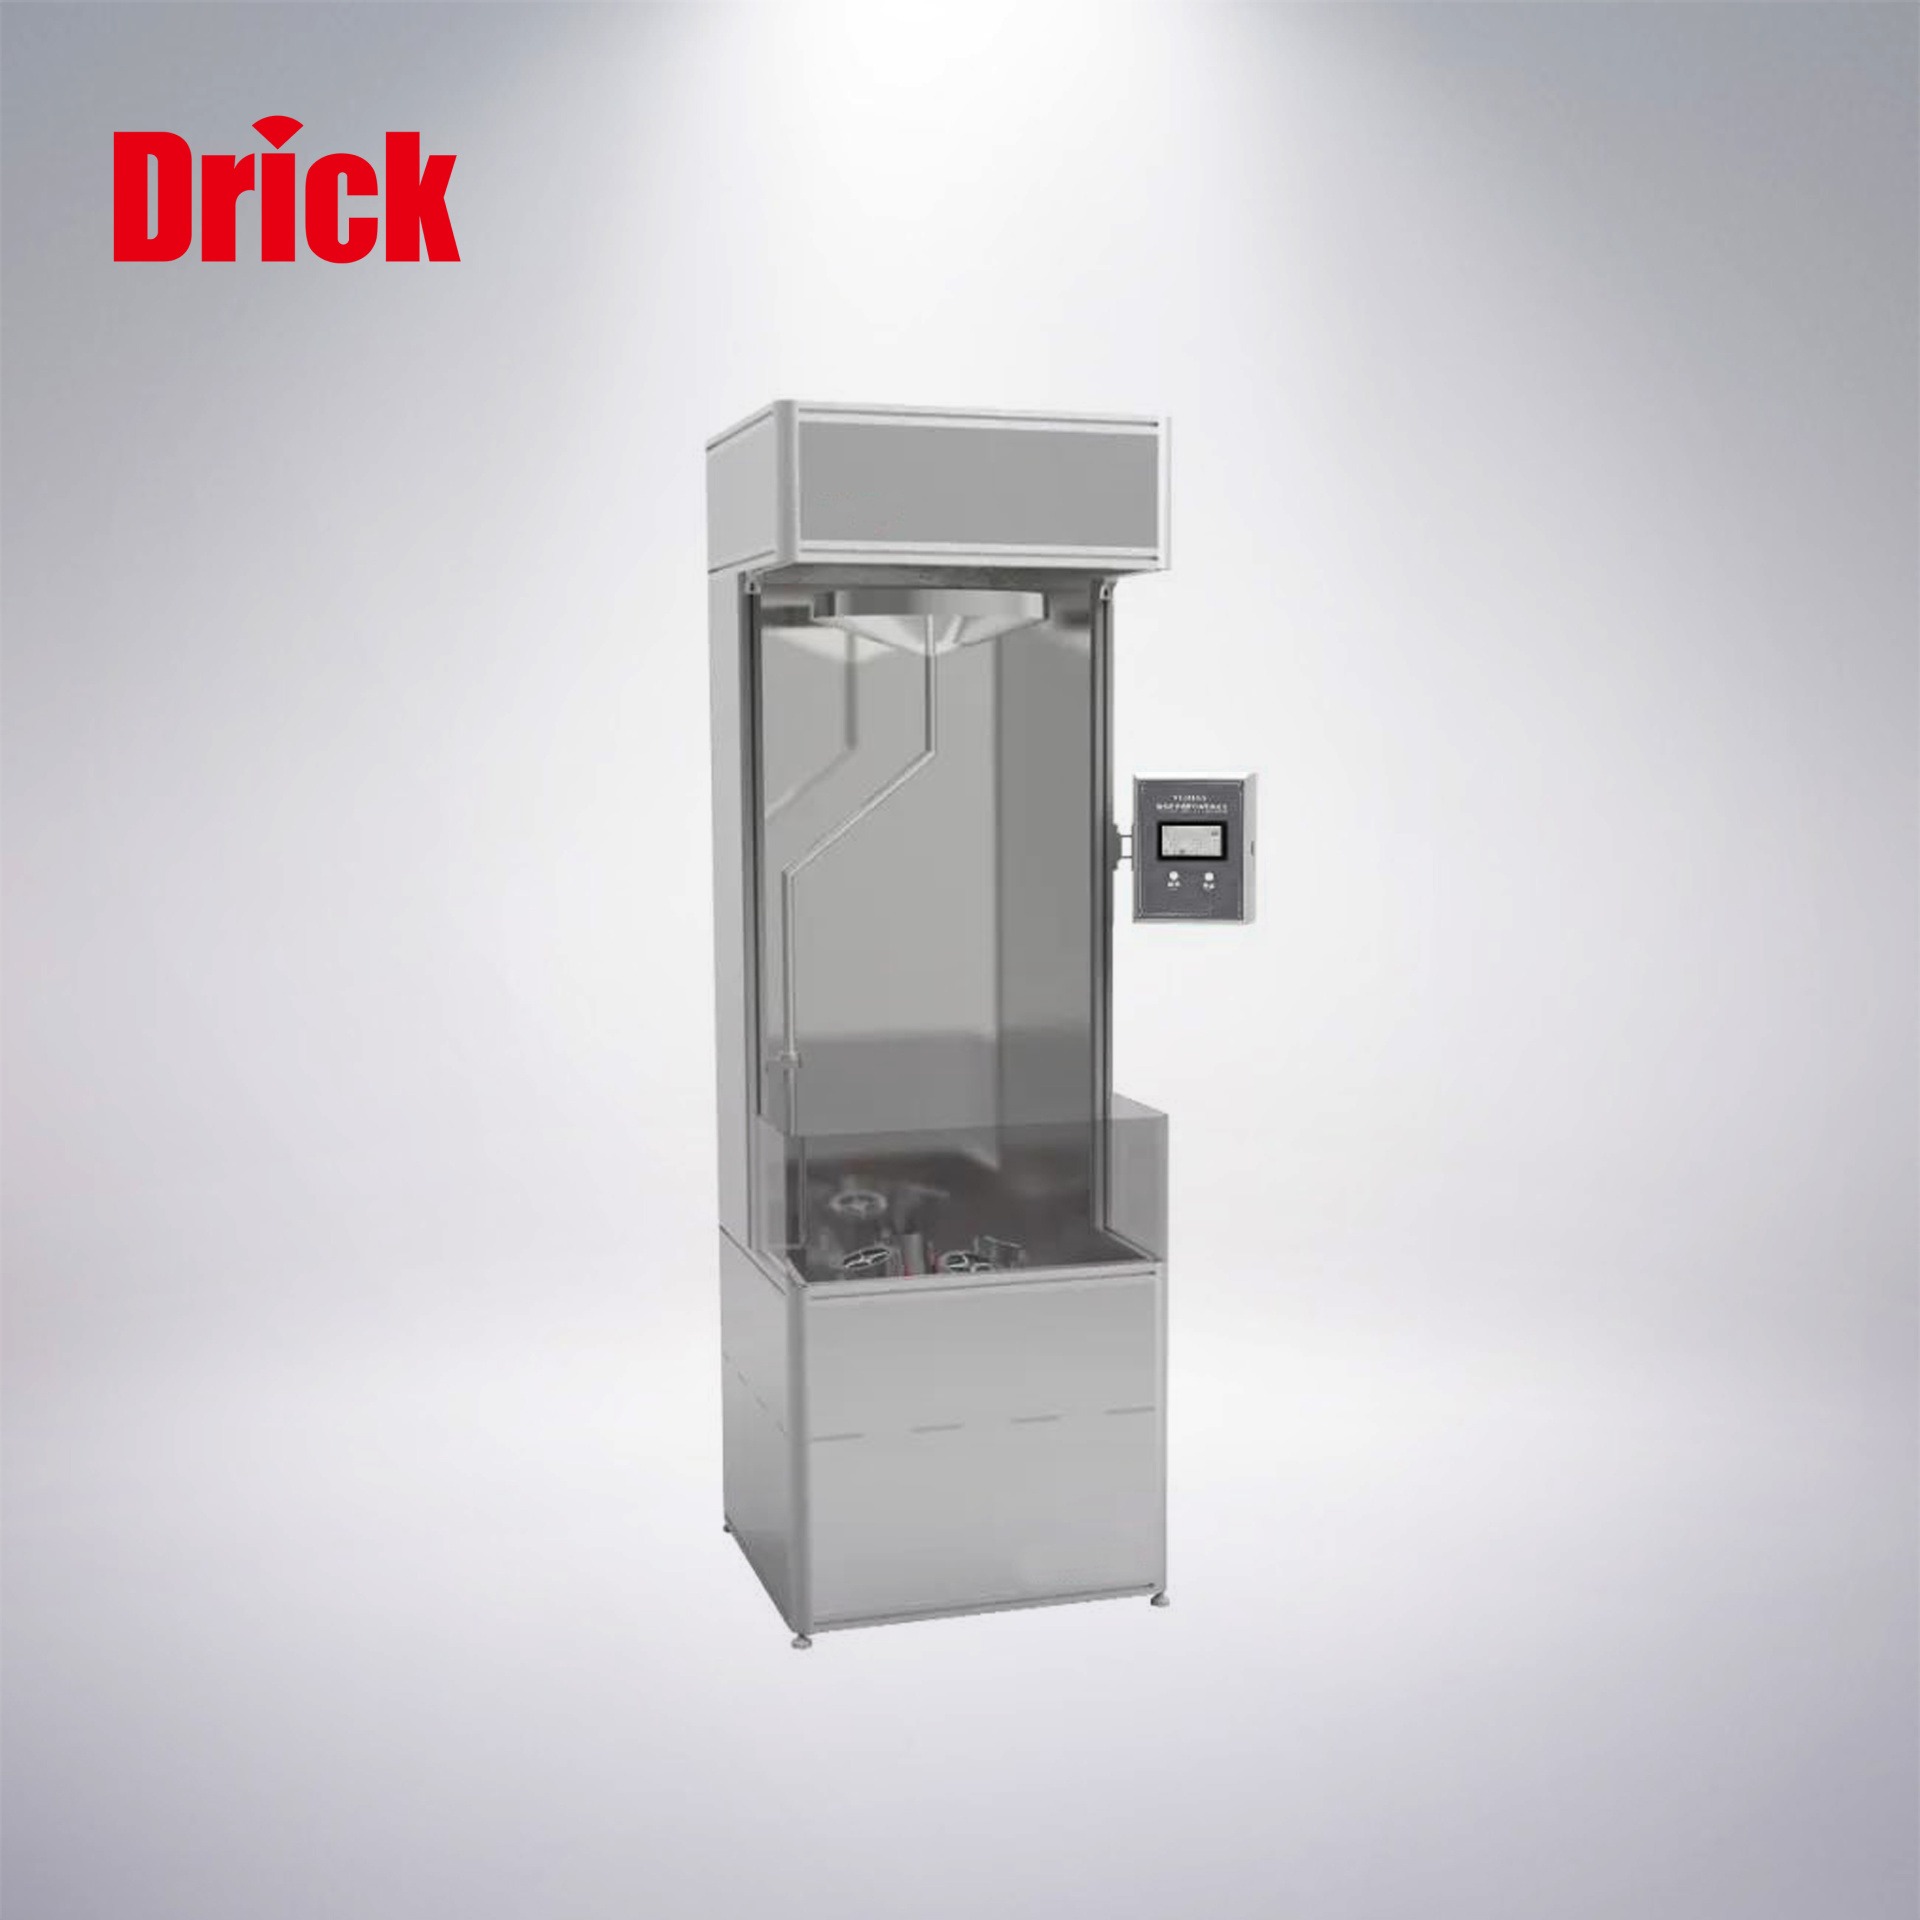 德瑞克DRK816A邦迪斯门淋雨测试仪(纺织品)  织物雨中拒水性测试仪